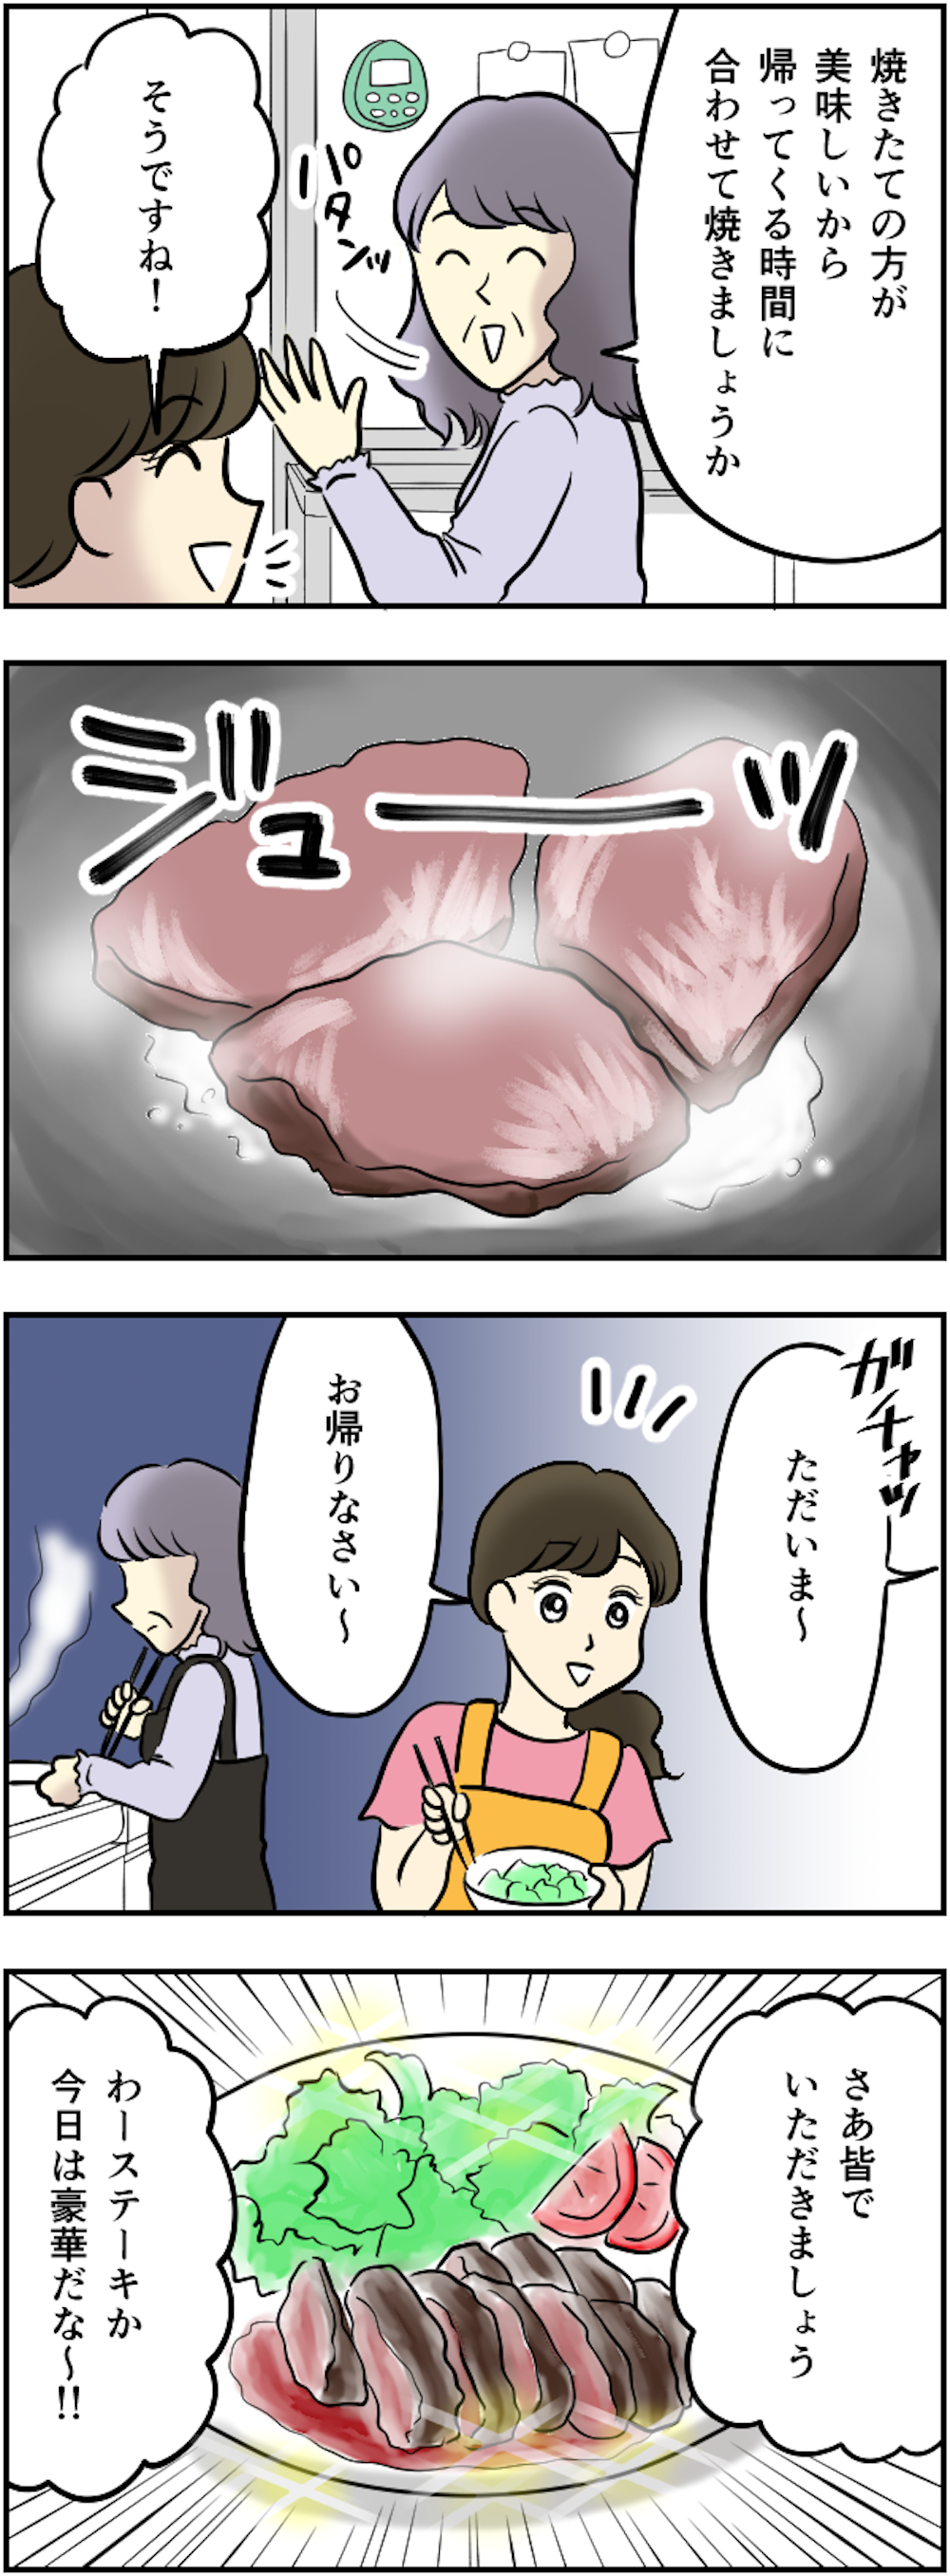 【義母の嫌がらせ】いただき物の高級ステーキ肉。家族で食べようと思ったら、私のだけ...【漫画】 53kansei_005.png